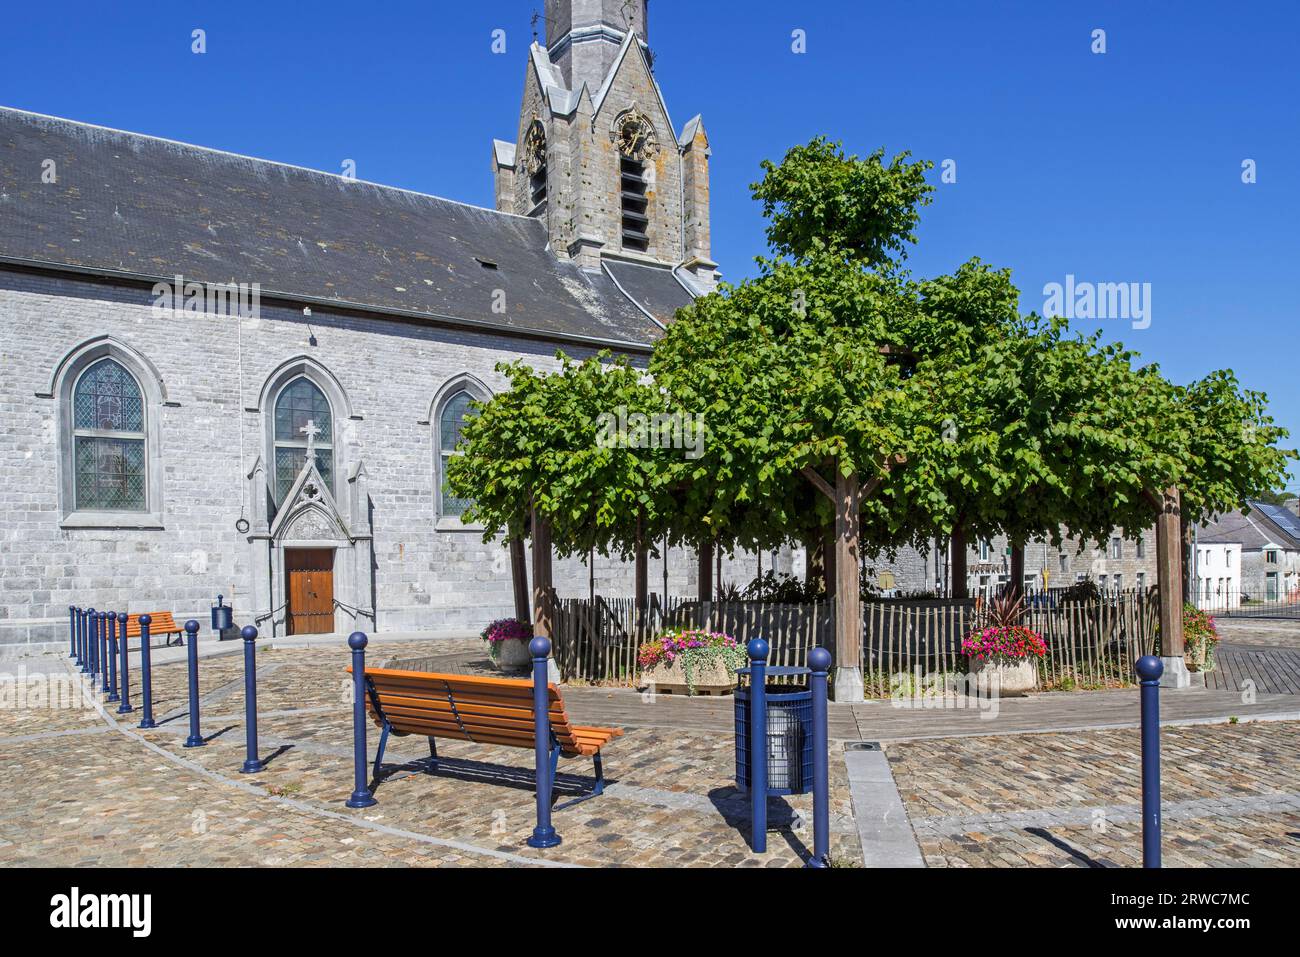 St. Jean l'église baptiste et vieux tilleul, planté sur la place de l'église en 1714 au village Macon, Momignies, Hainaut, Belgique Banque D'Images